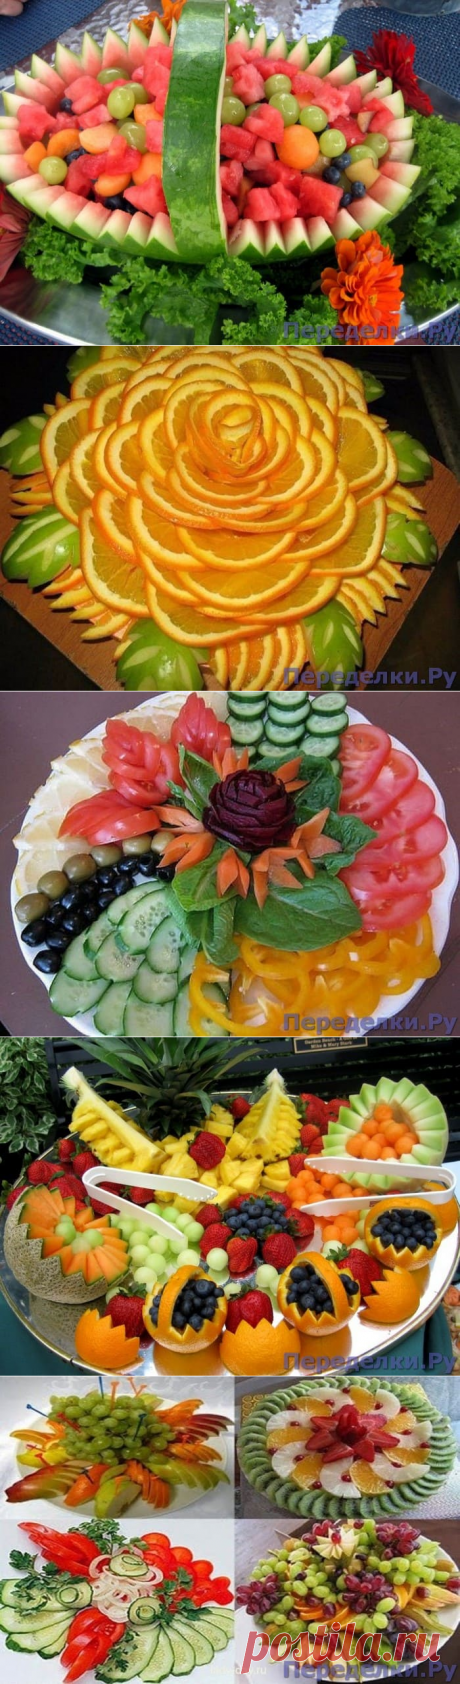 Красивые фруктовые и овощные нарезки на праздничный стол - Переделки.РуПеределки.Ру